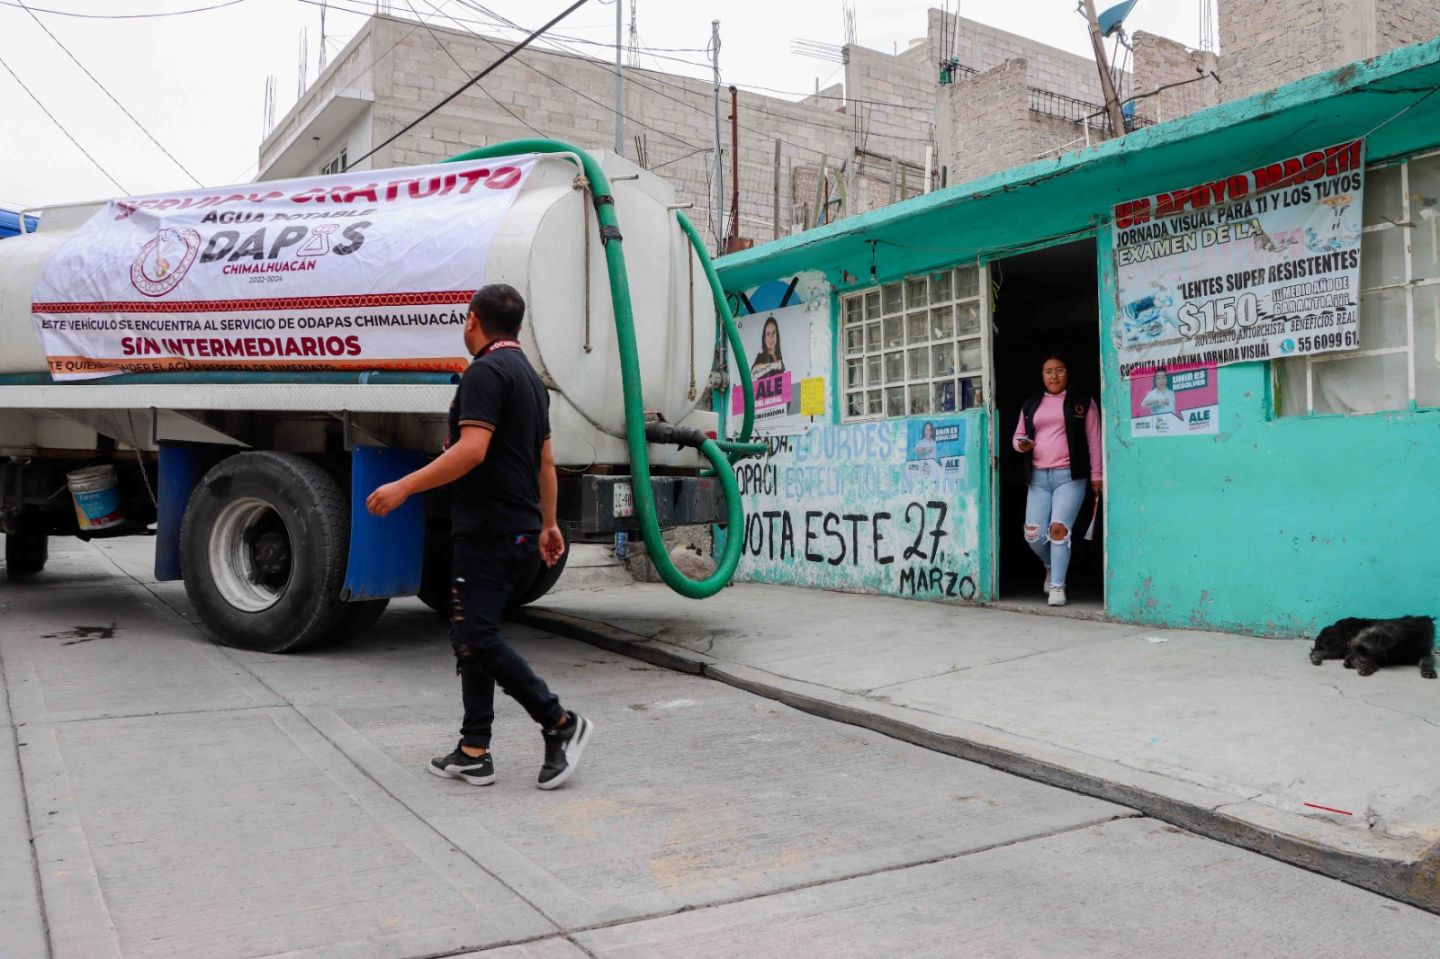 Atienden demanda de agua en Chimalhuacán con servicio gratuito de pipas